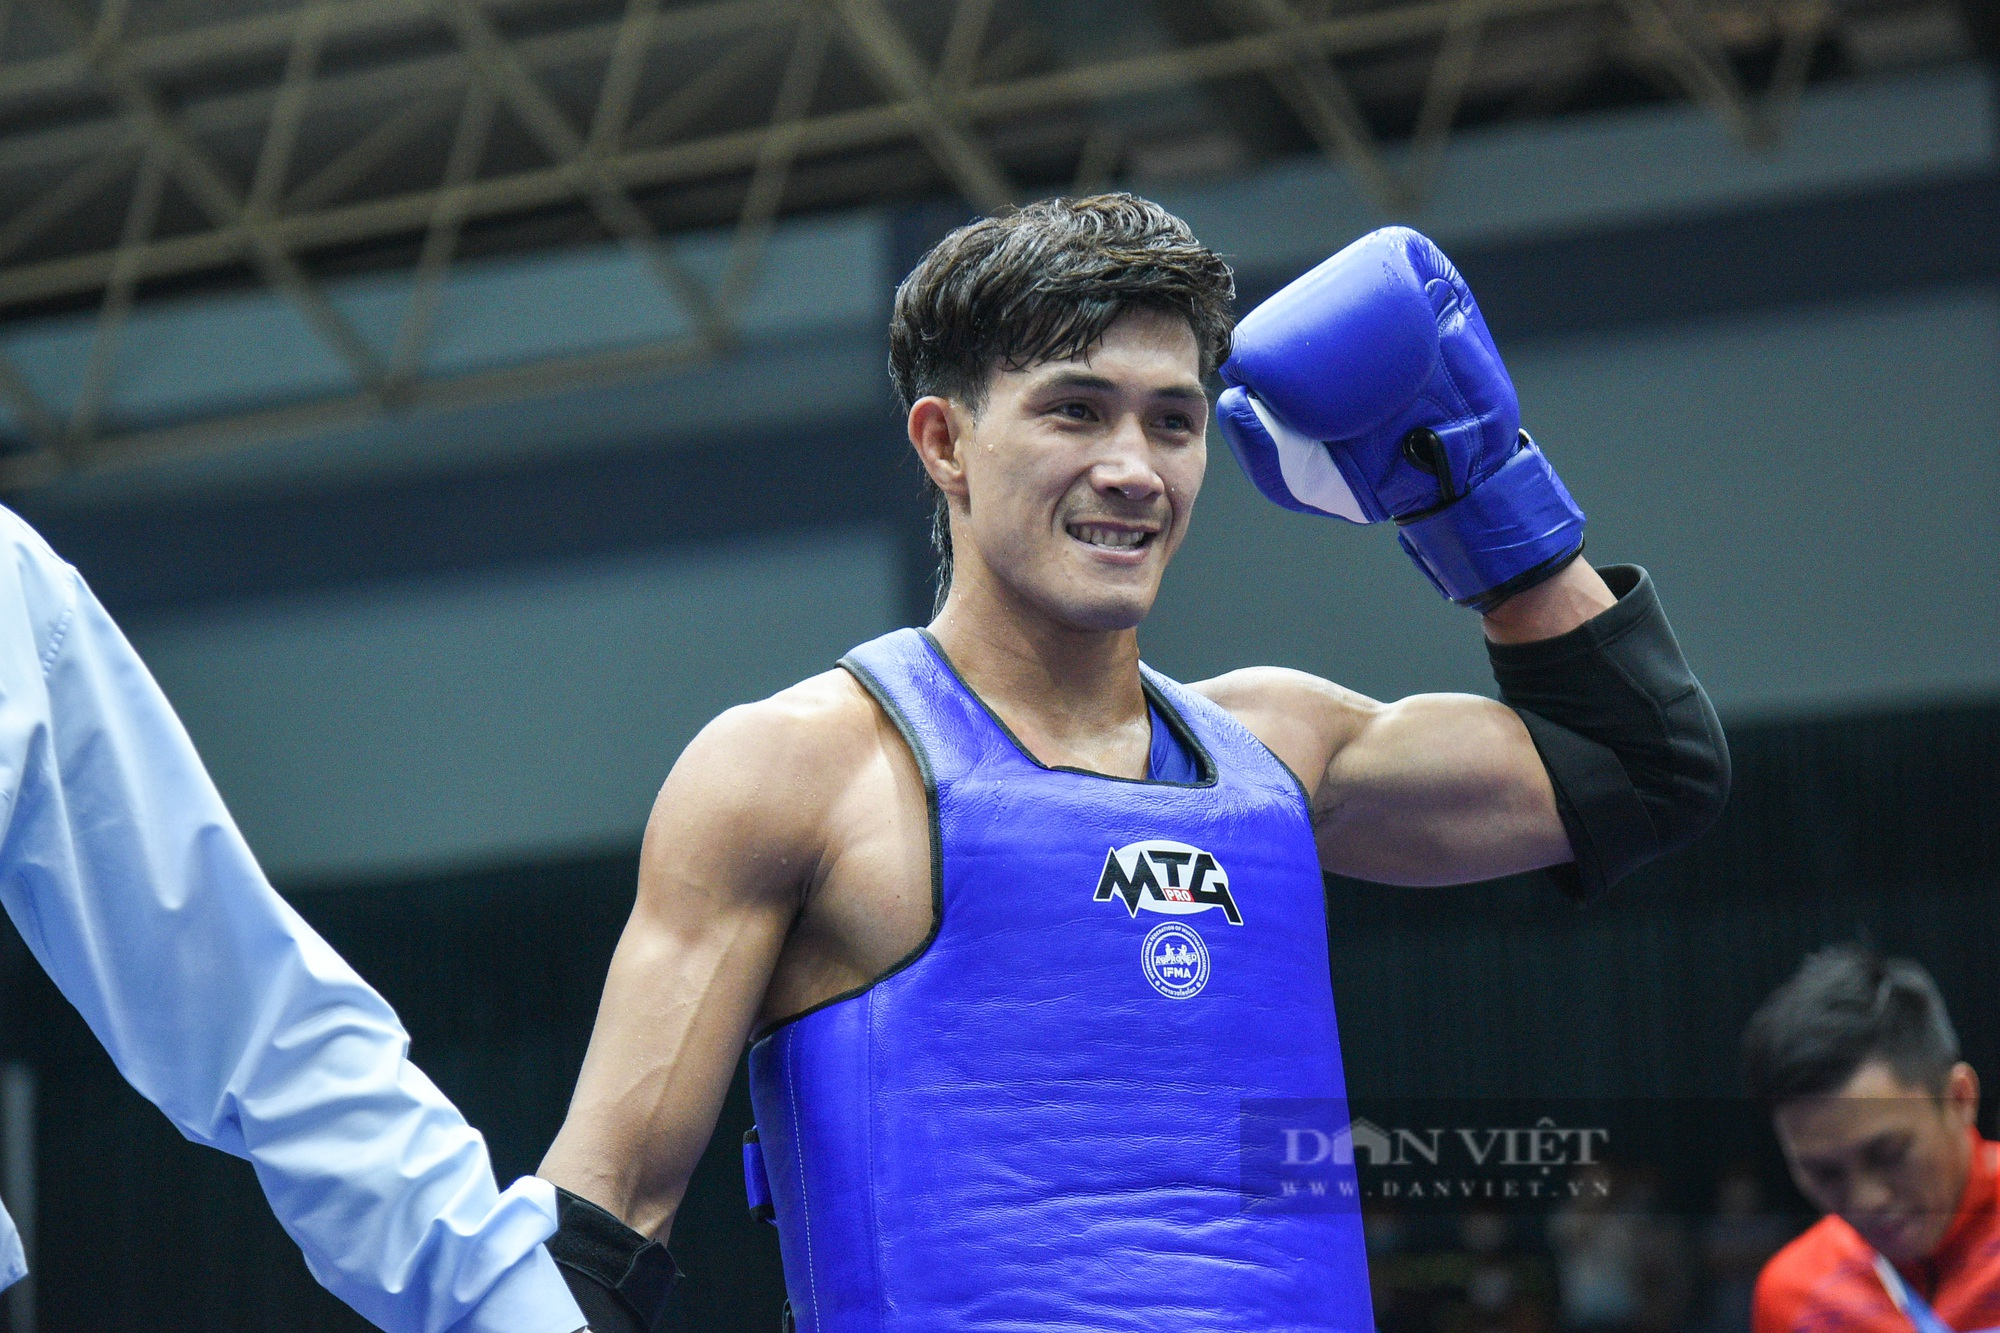 Đánh bại đối thủ Philippines, võ sĩ Nguyễn Trần Duy Nhất vào chung kết Muay - Ảnh 7.